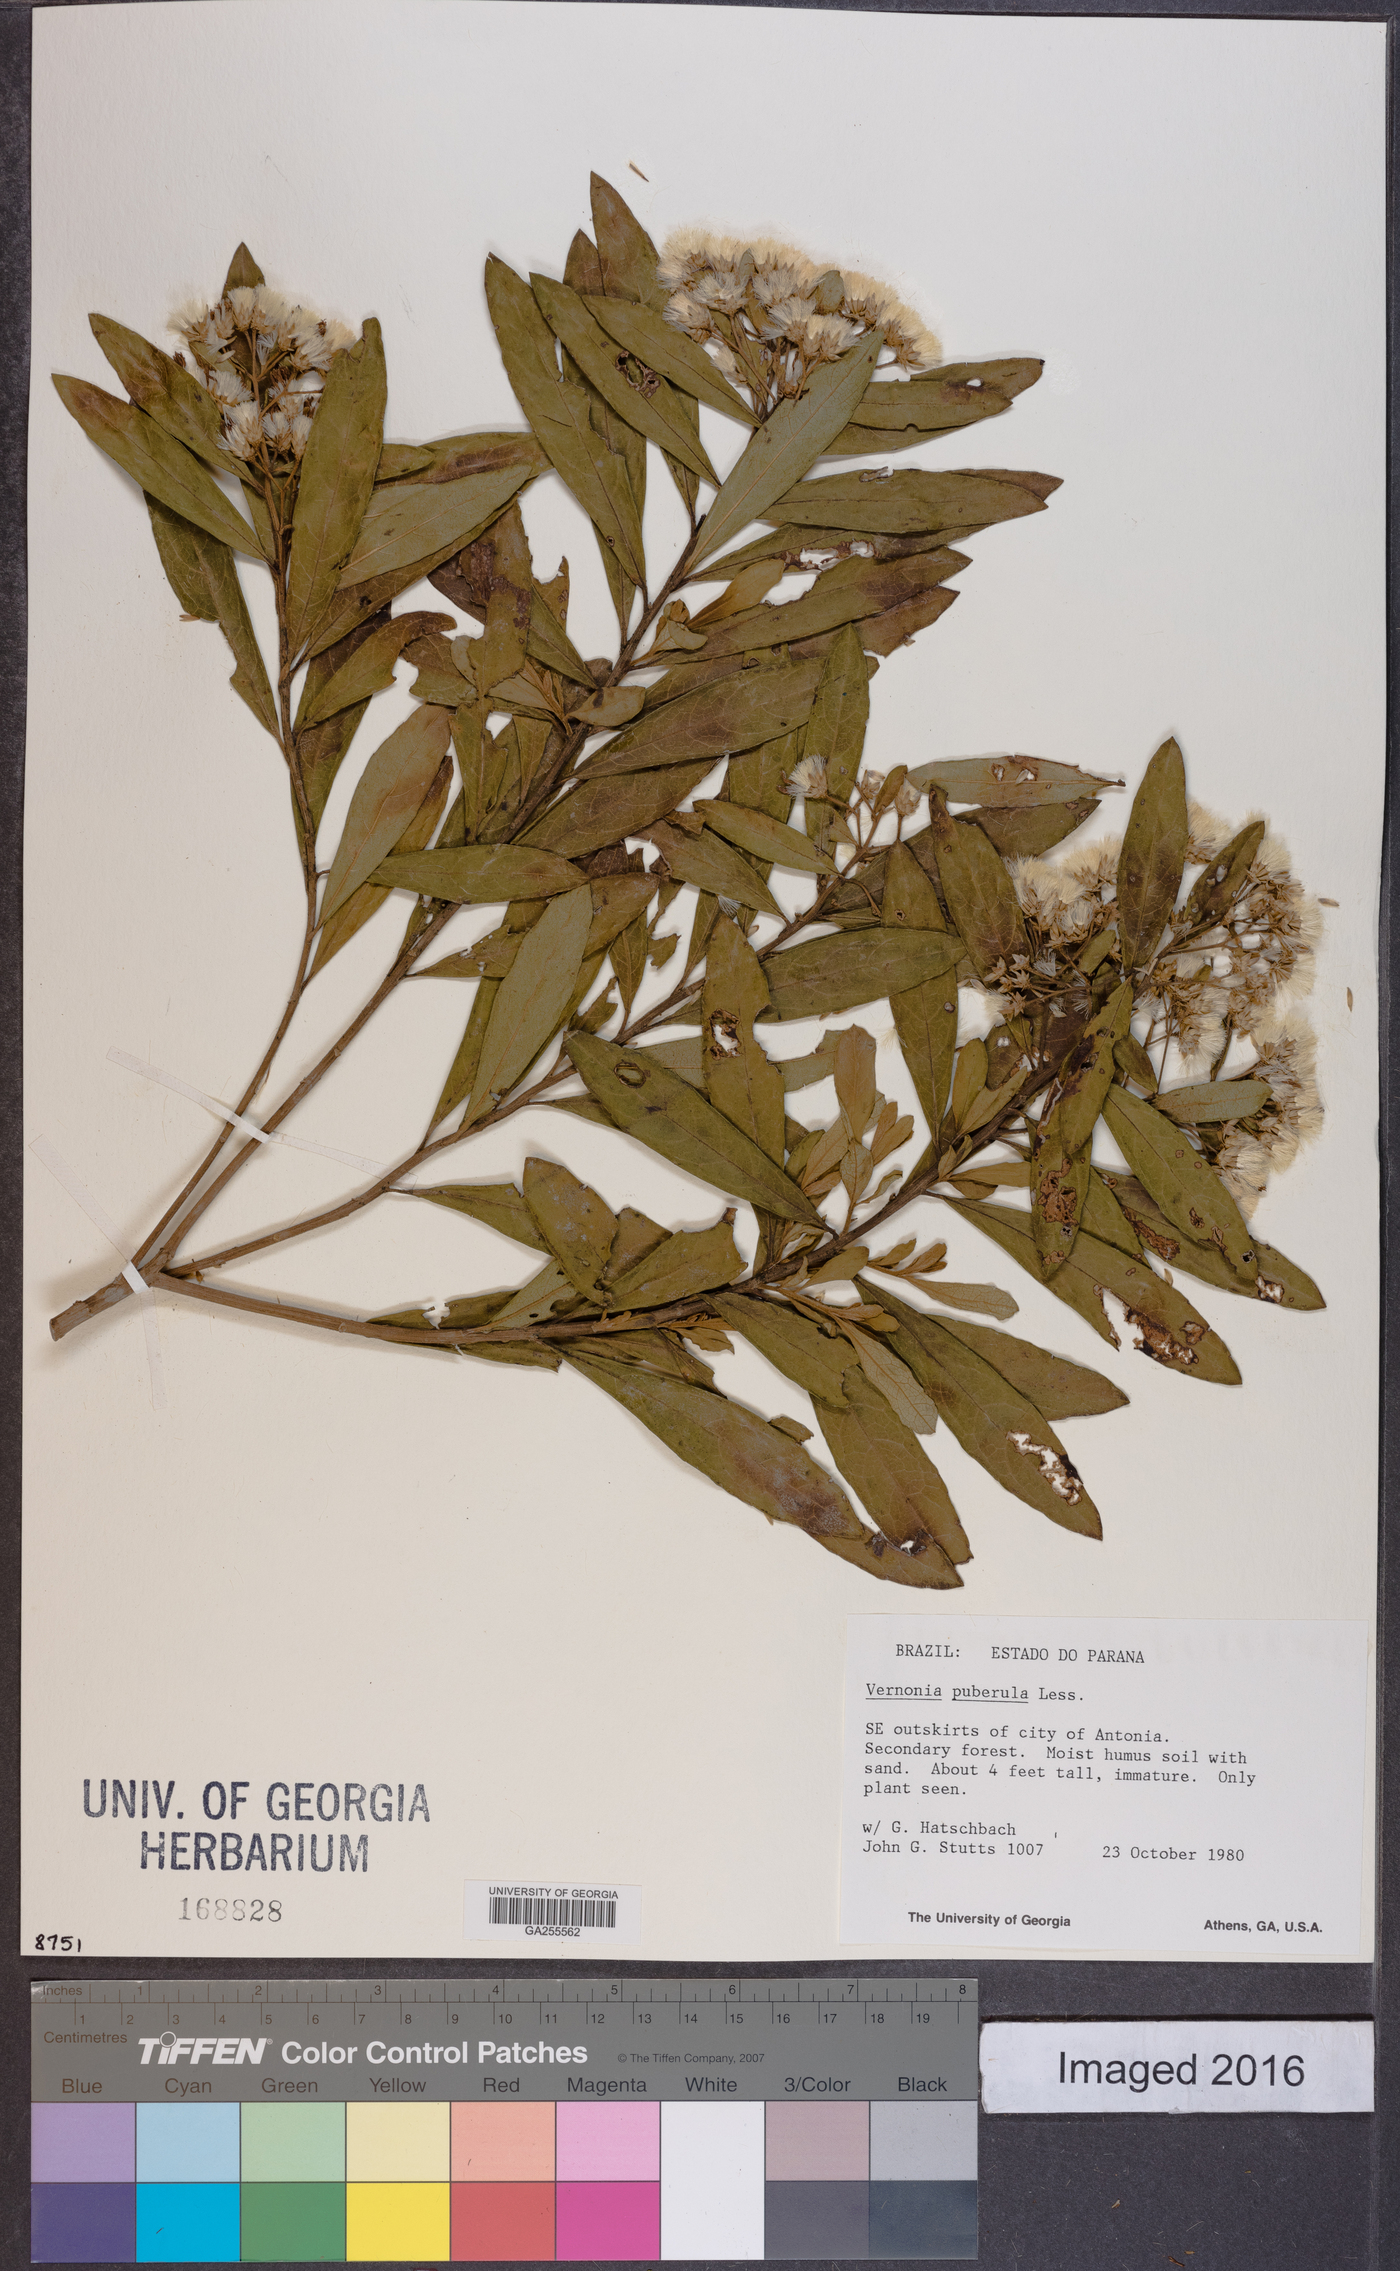 Vernonanthura puberula image